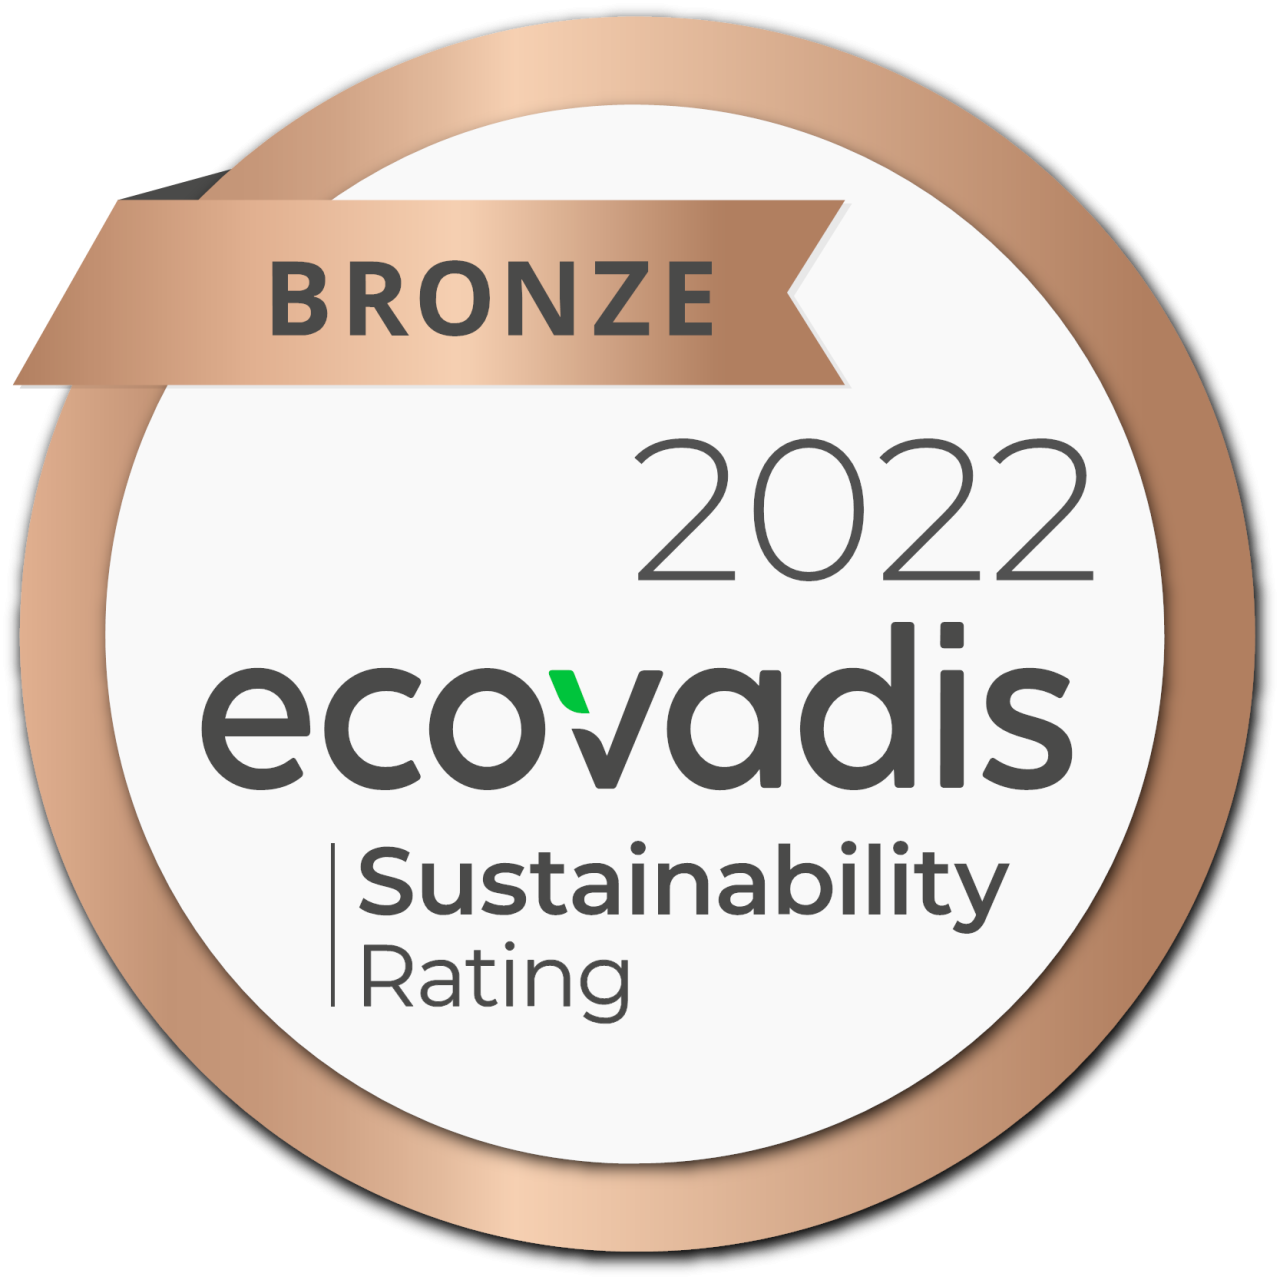 Bronze award 2022 Ecovadis Sustainability rating